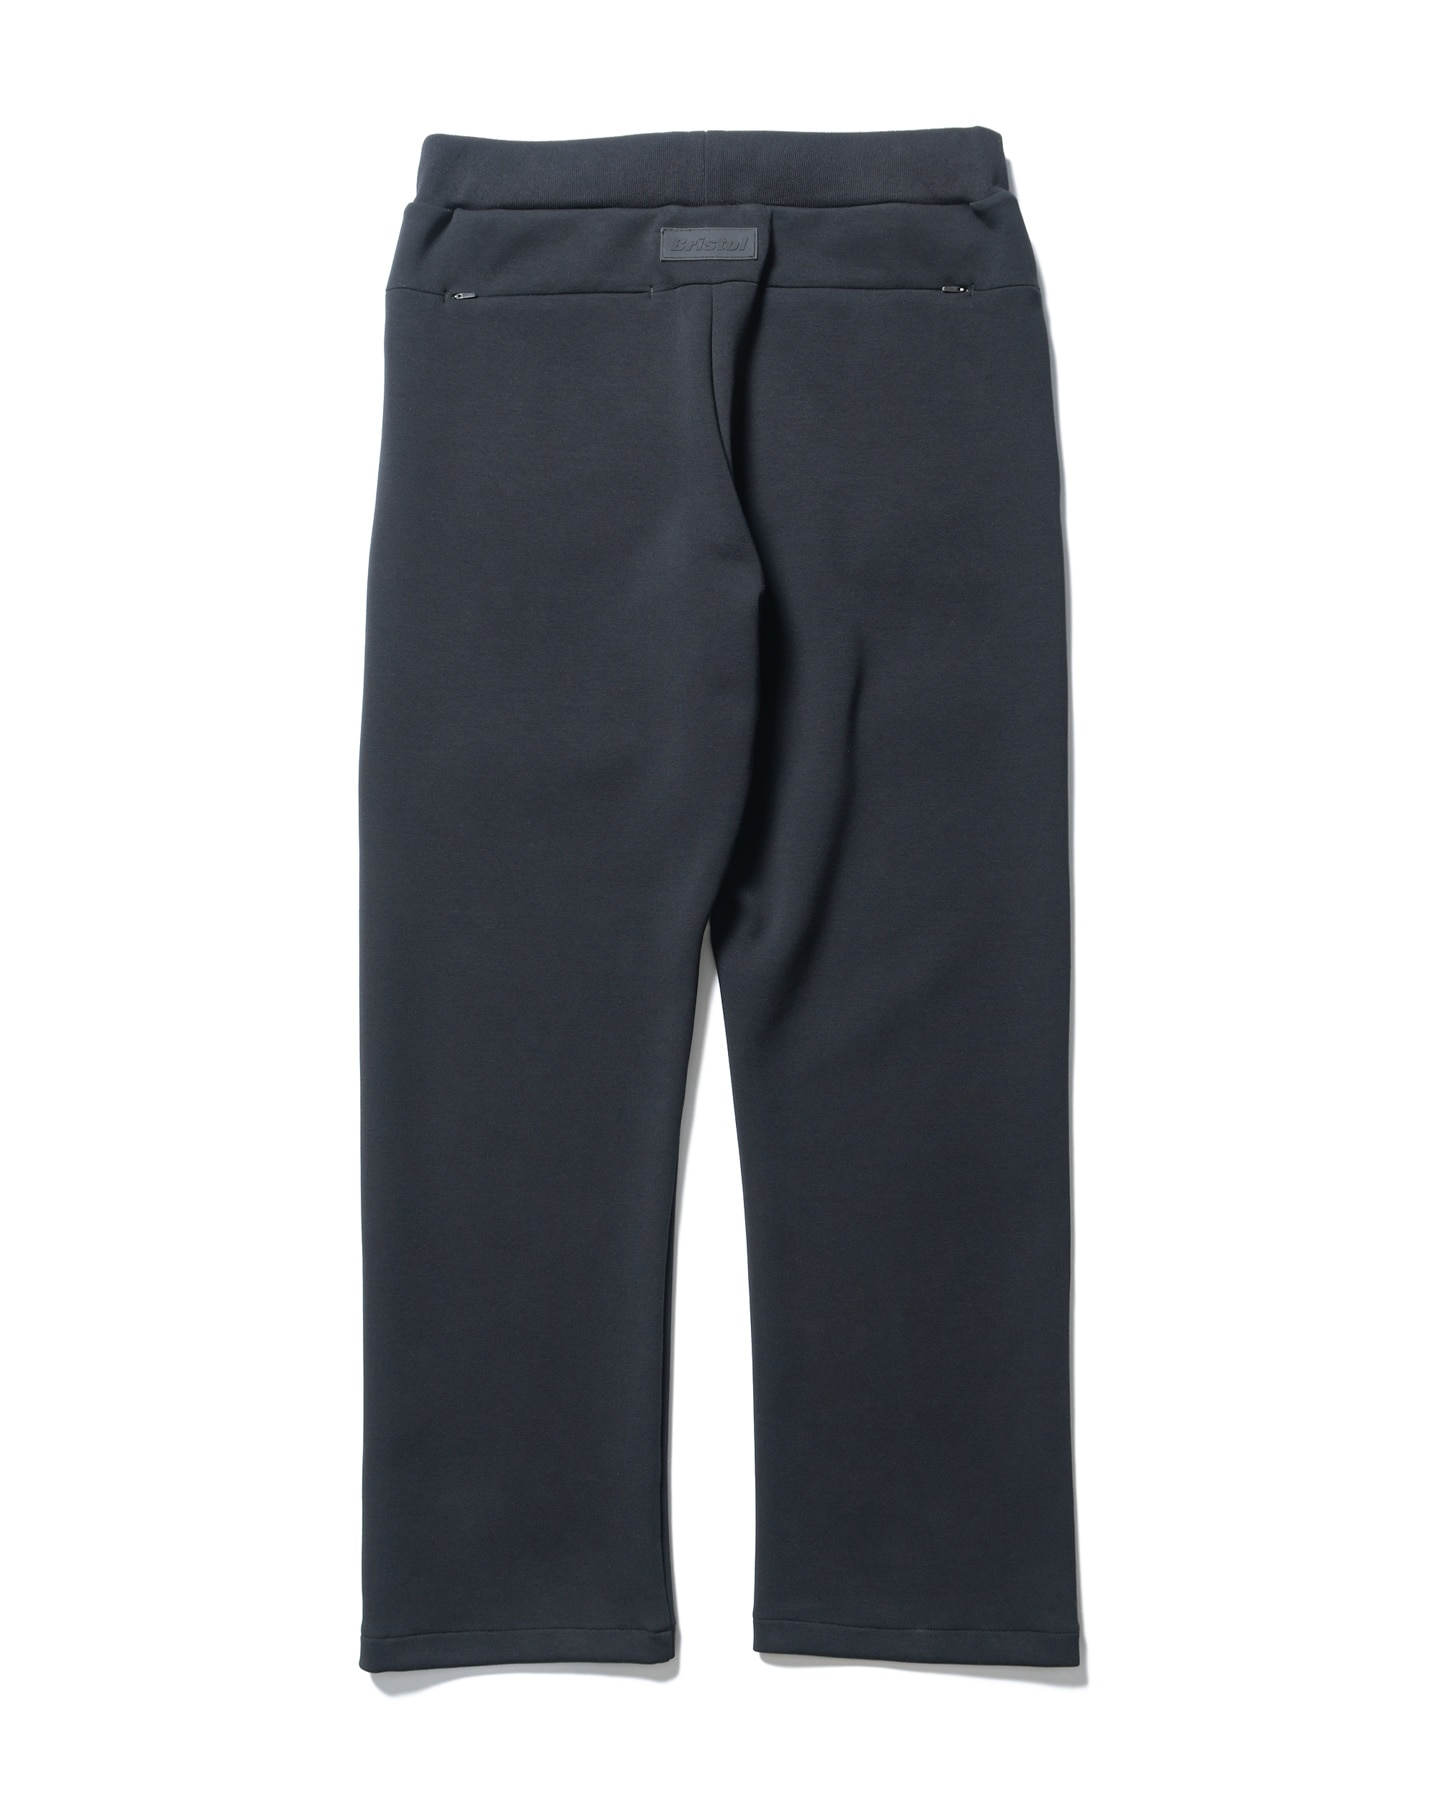 卸し売り購入 DULSE SWP-014 Black Pants - デニムワークパンツ36 パンツ